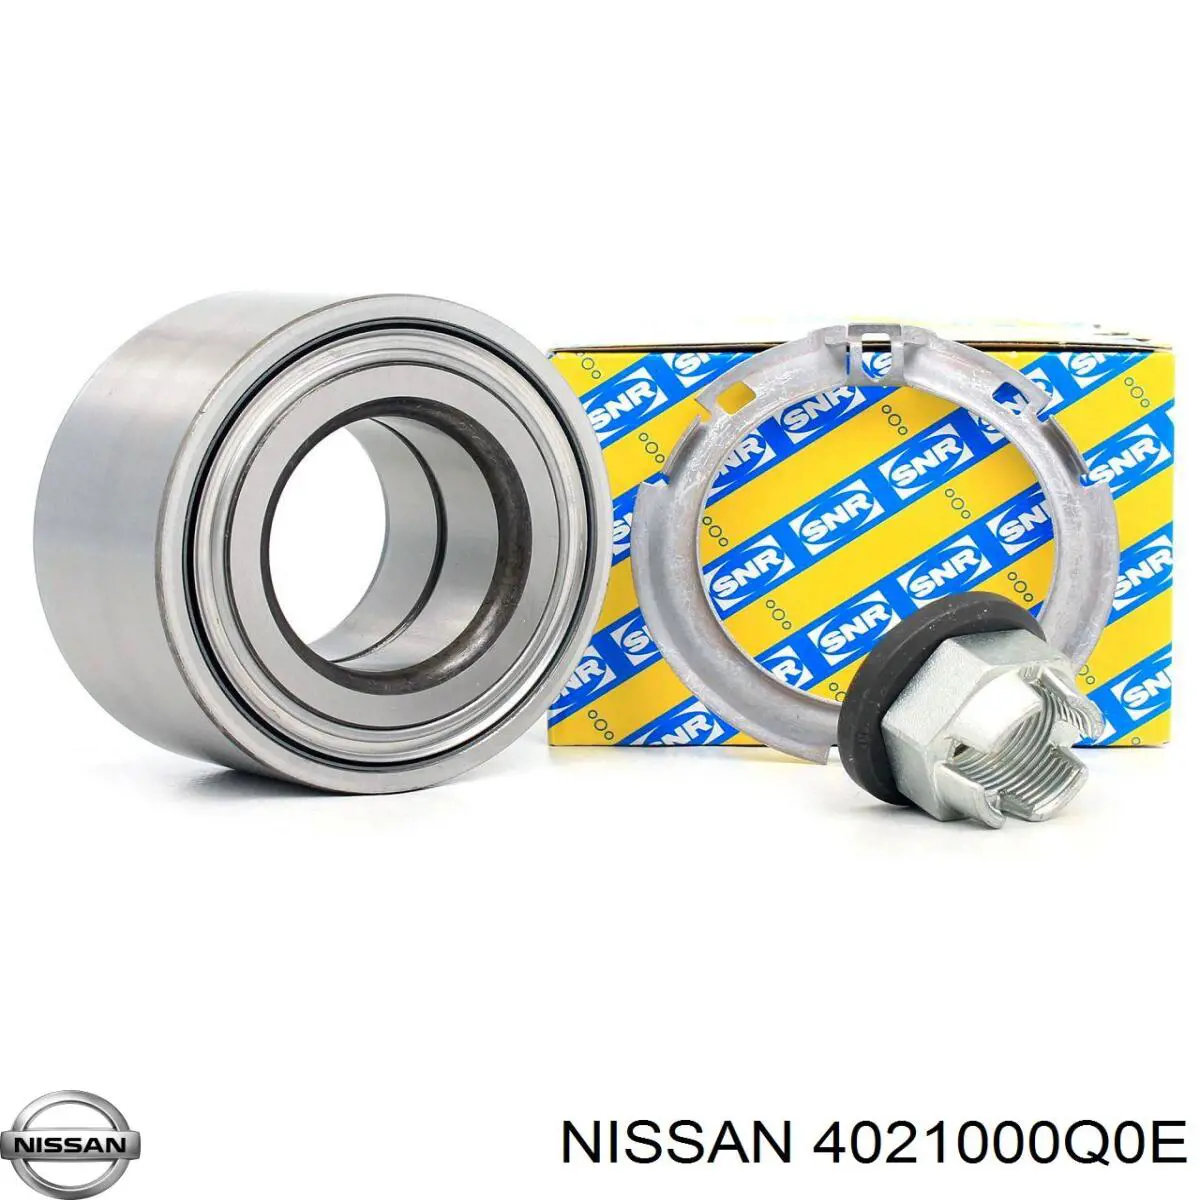 4021000Q0E Nissan подшипник ступицы передней